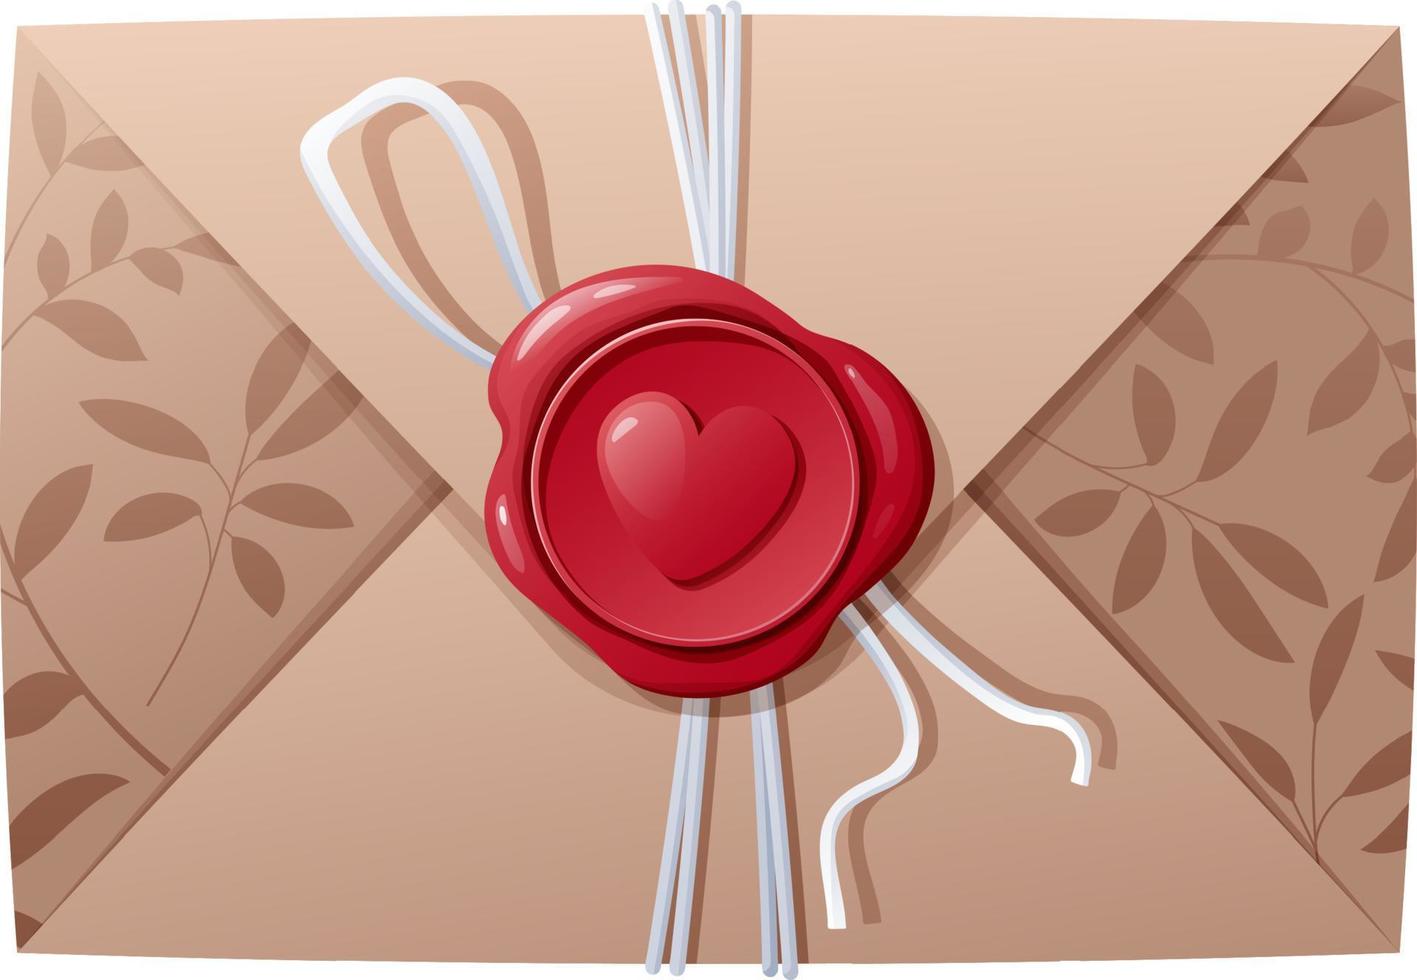 liefde brief in een envelop met een was- zegel. bekentenis, ik liefde jij. geschenk, Valentijn s dag. vector illustratie, icoon